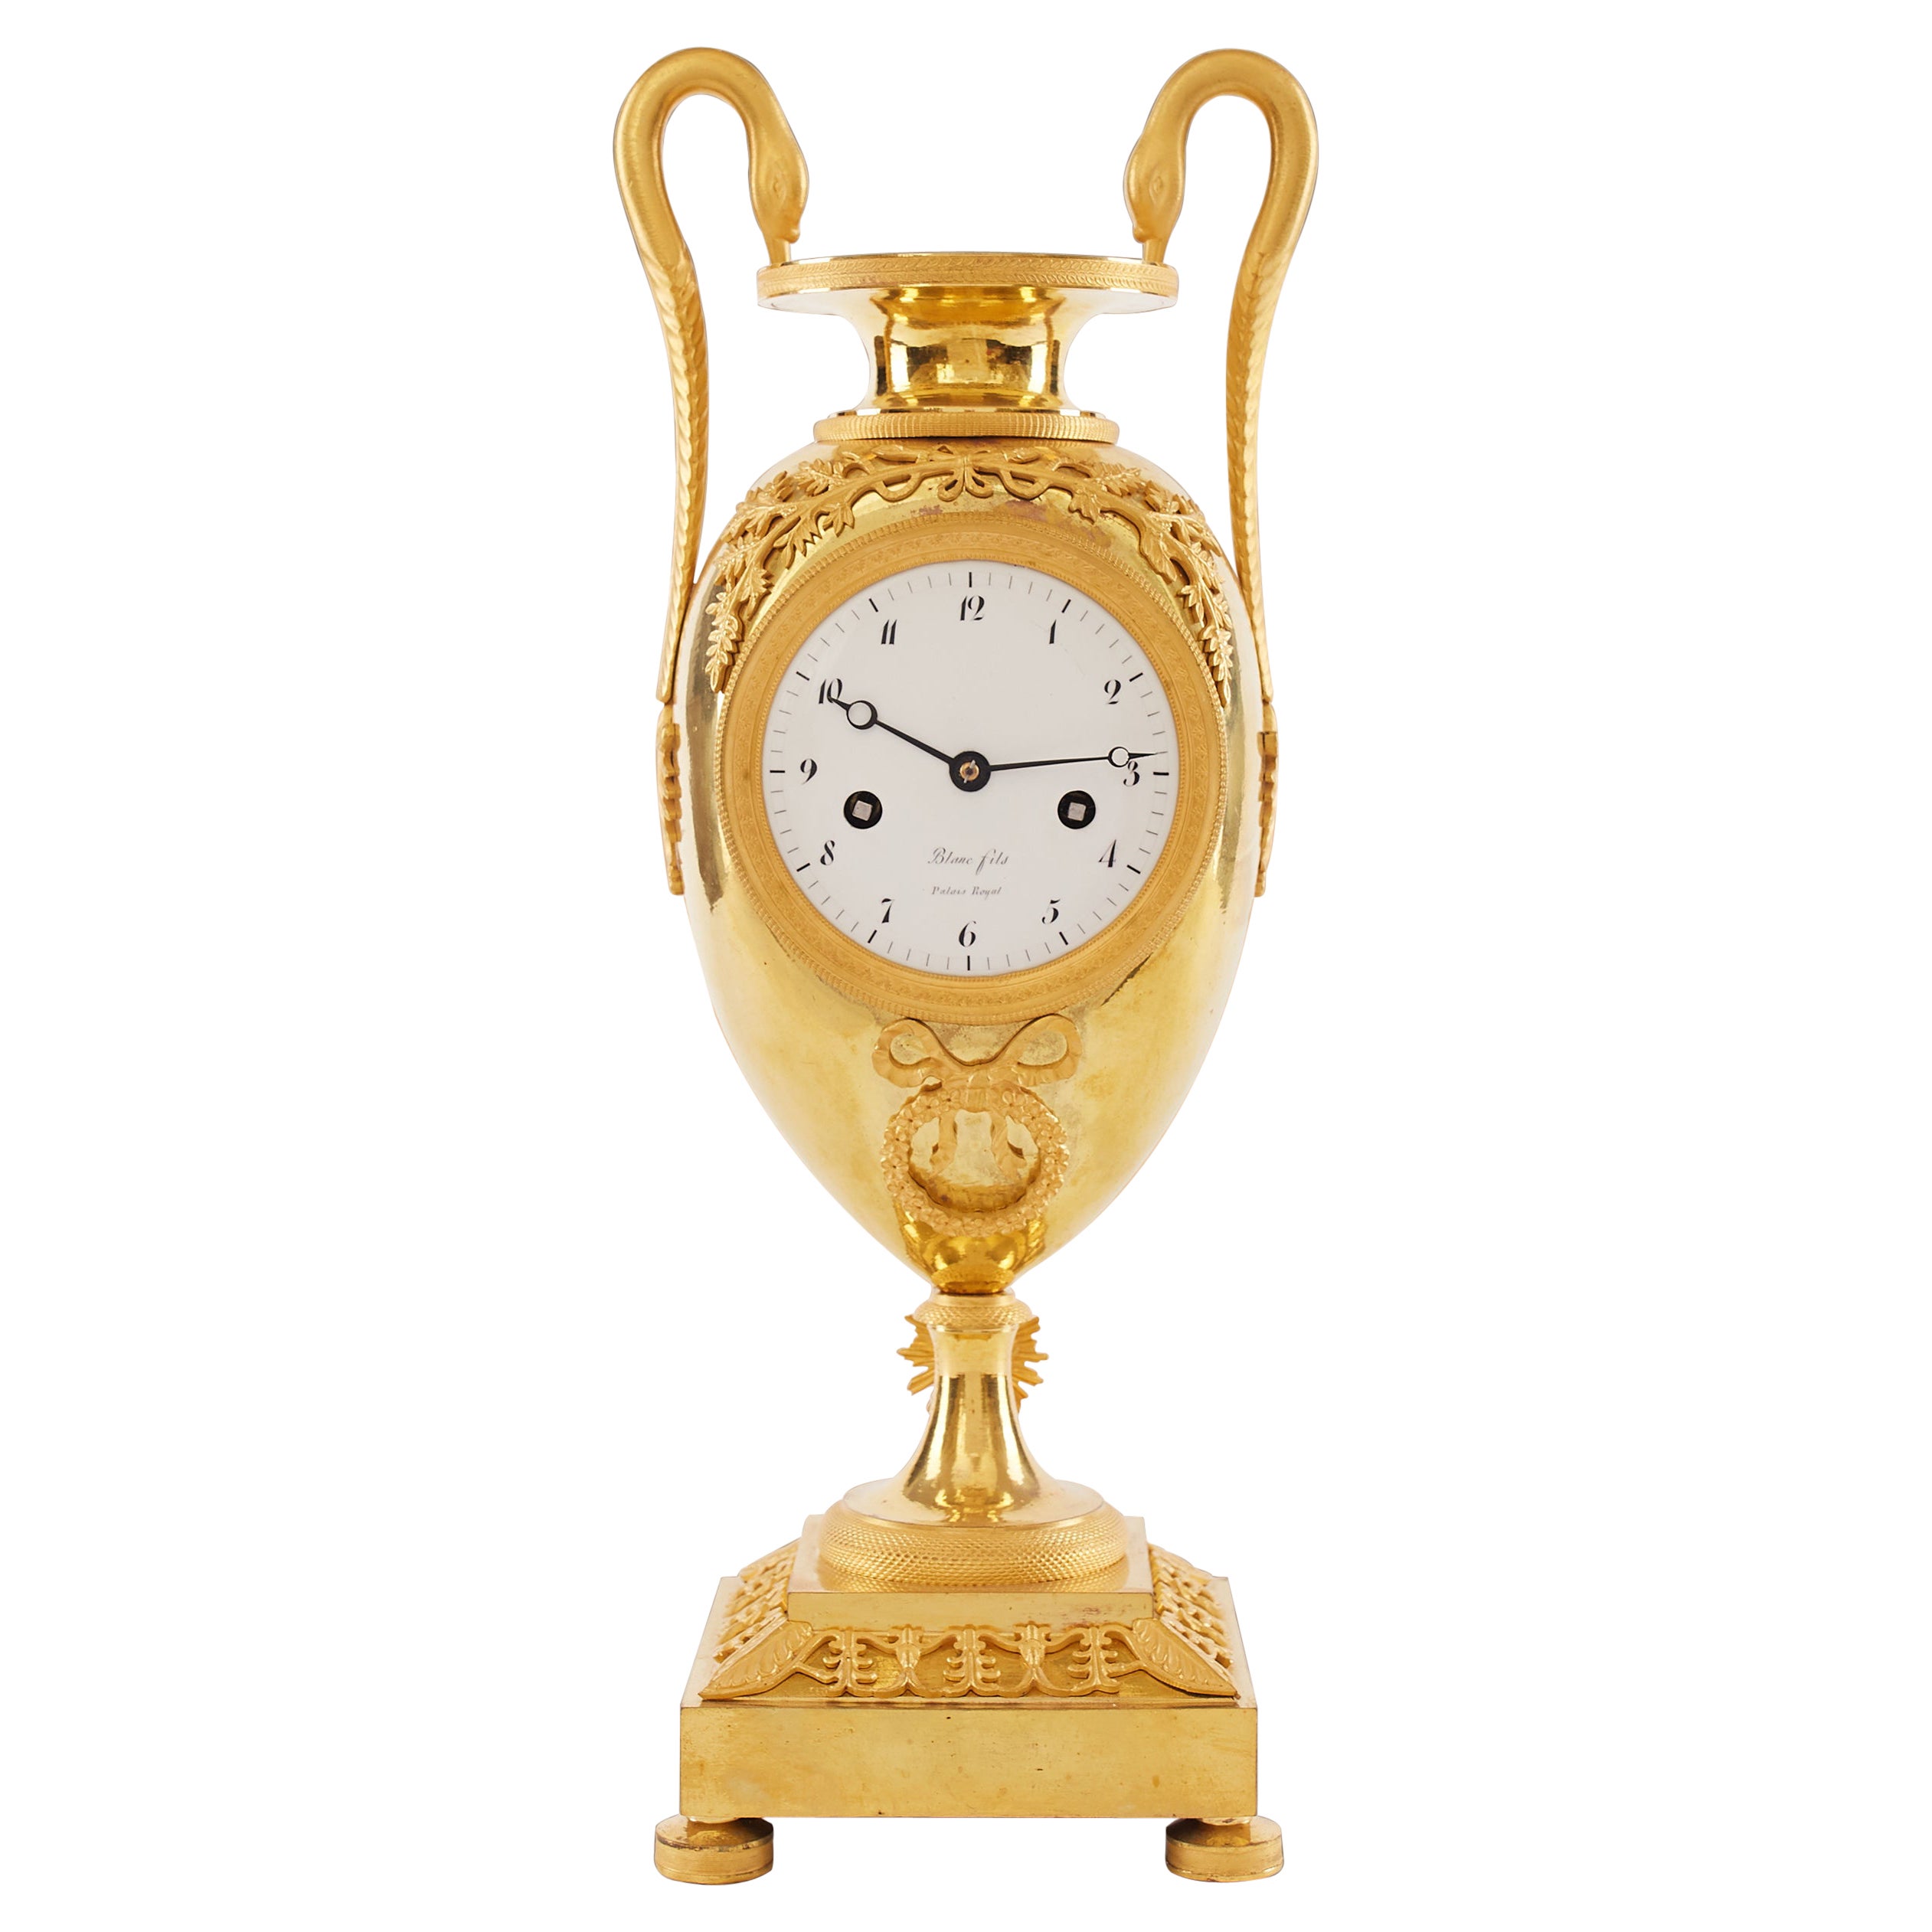 Horloge vase Empire en bronze doré datant d'environ 1810 attribuée à Claude Galle